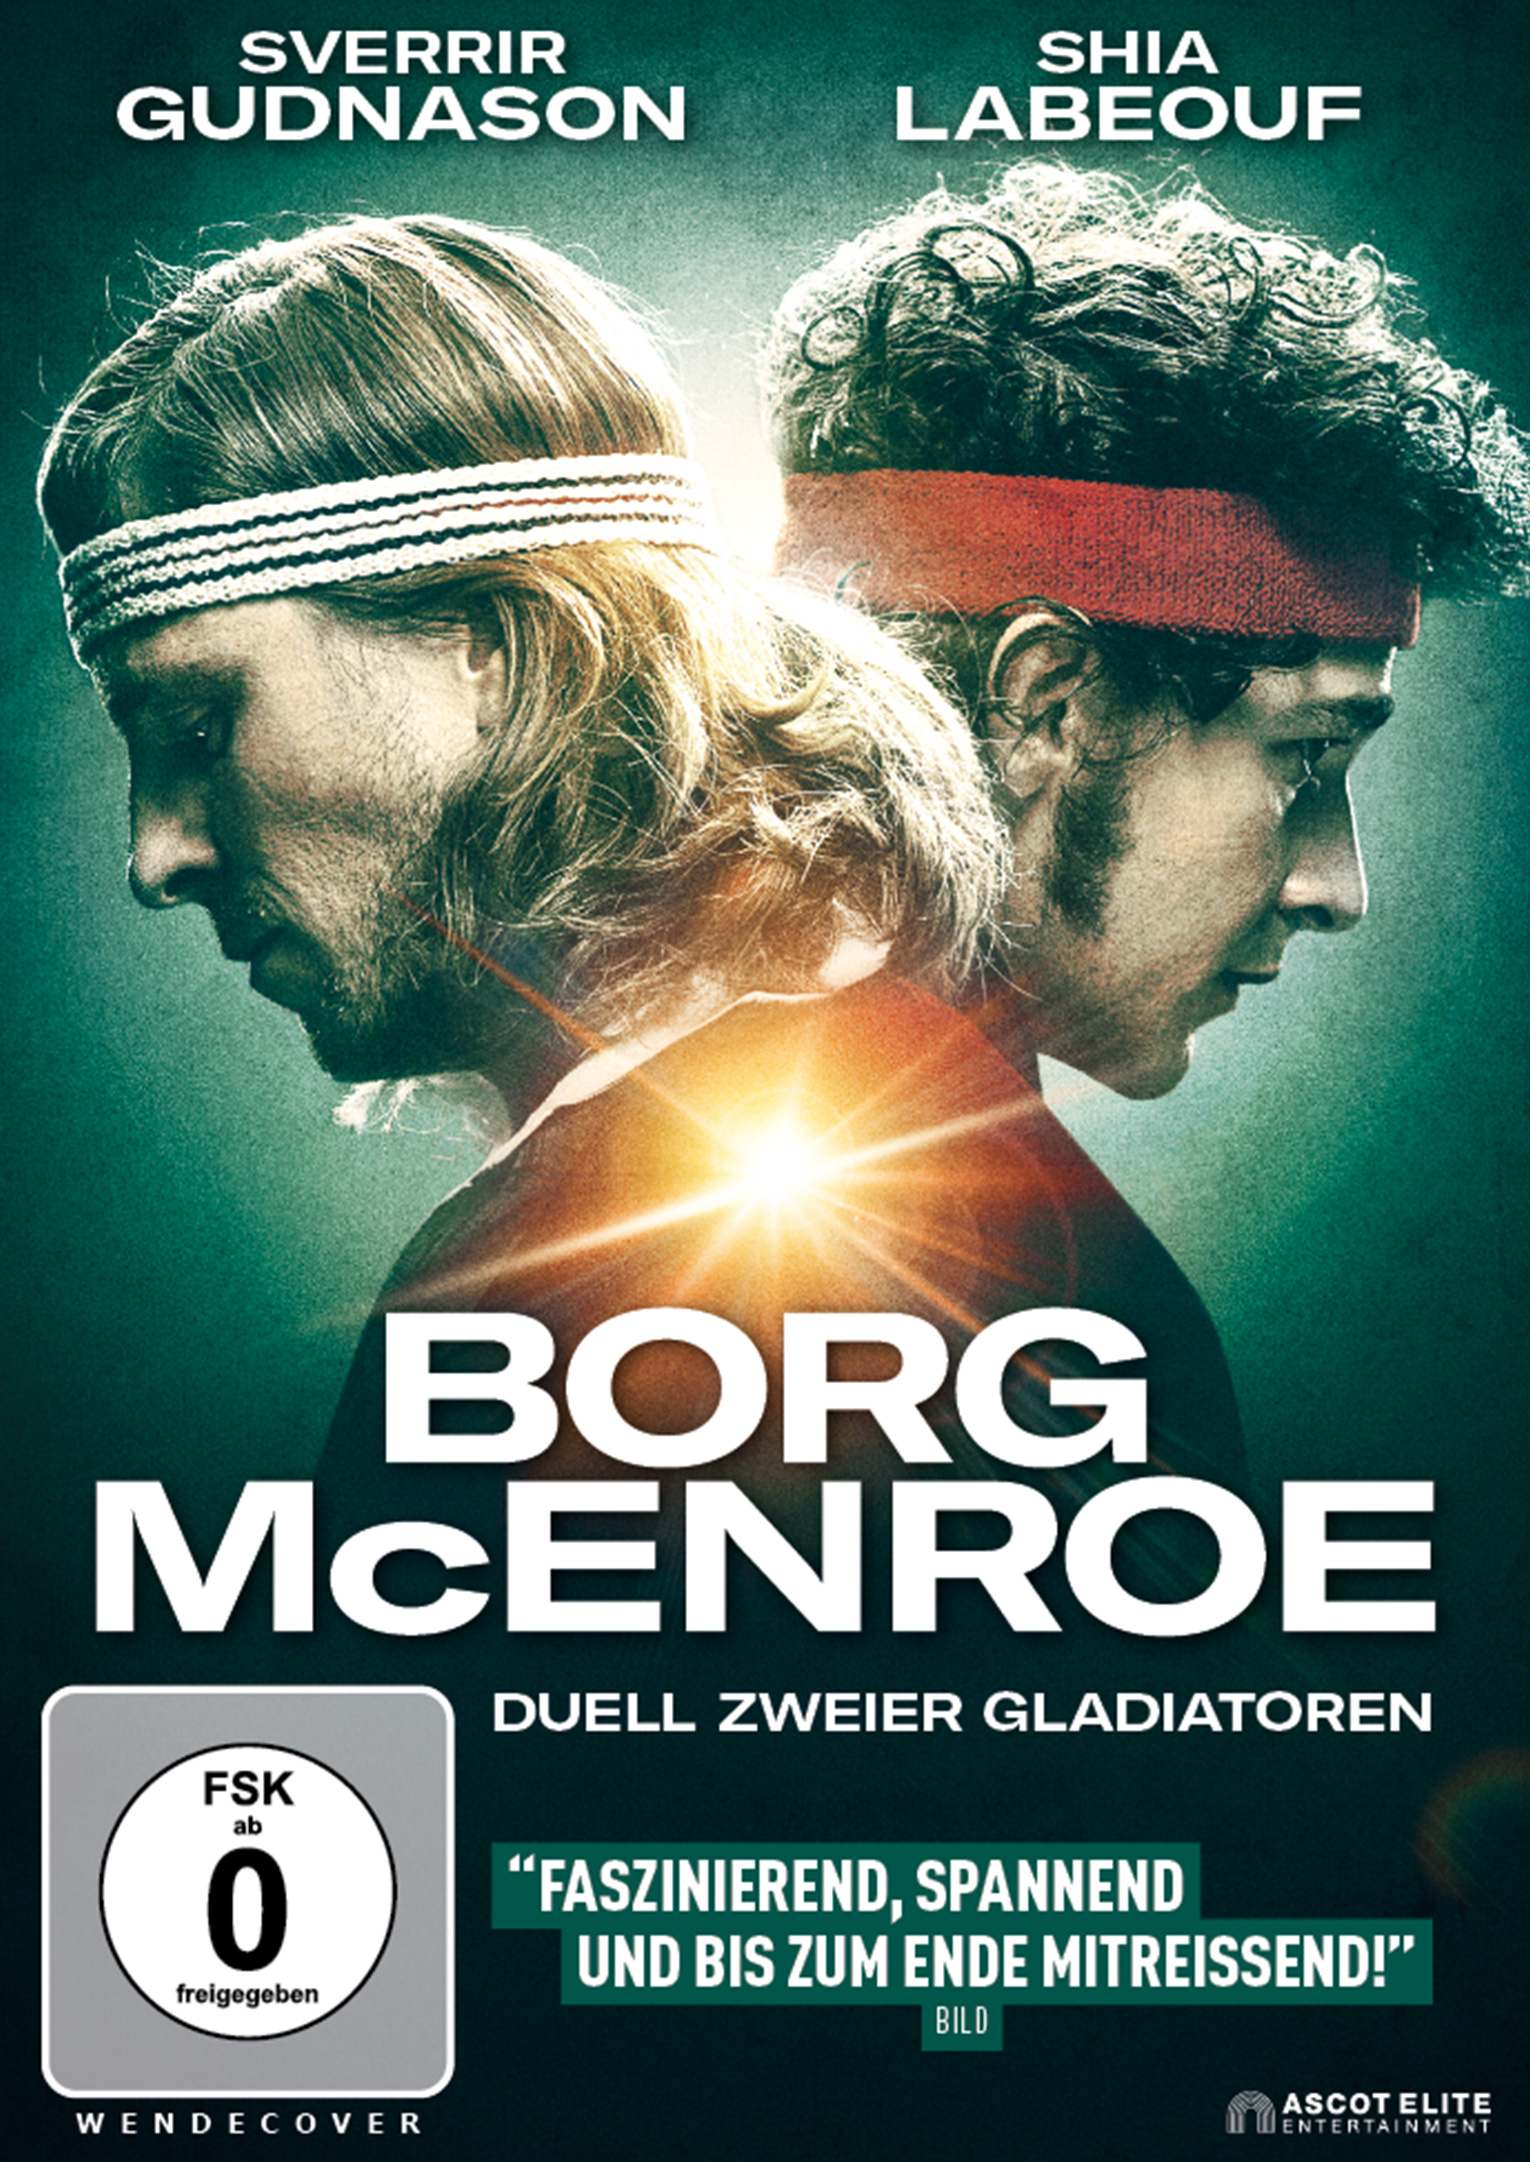 DVD Gladiatoren vs. McEnroe Borg zweier Duell -